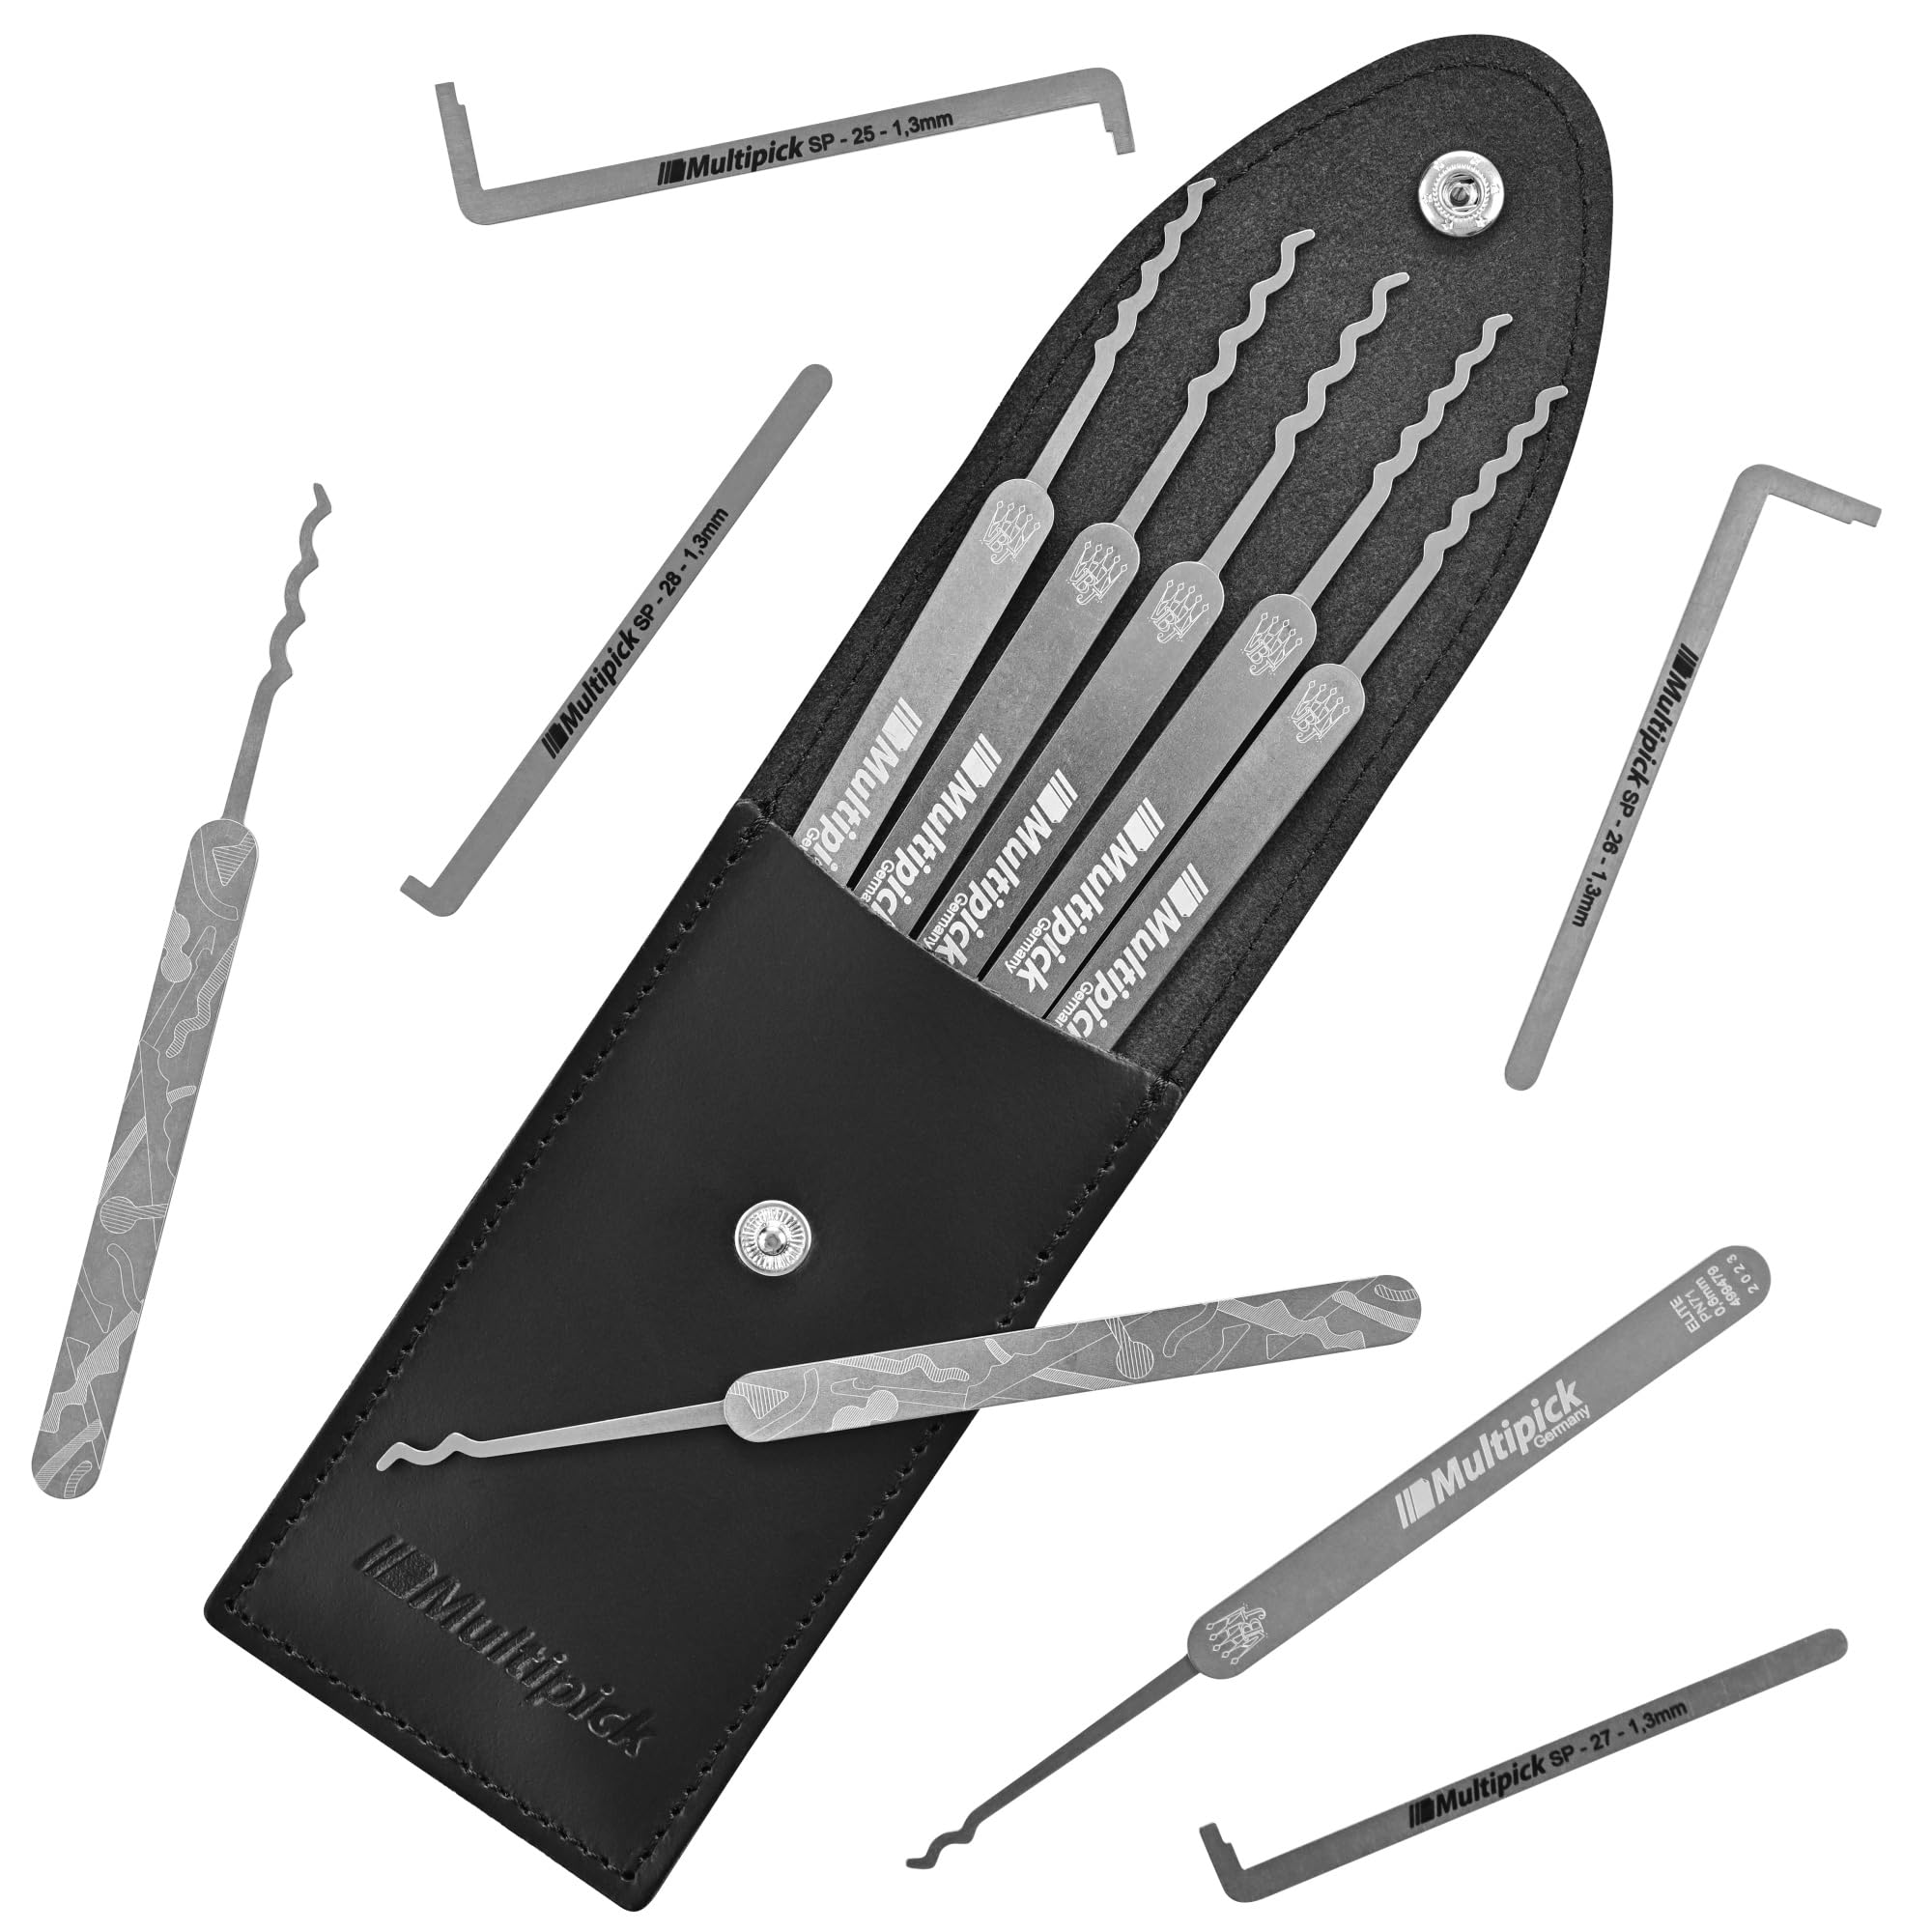 MULTIPICK ELITE 12 Profi Dietrich Set - [12 Teile | 0,6 mm] Made in Germany - Lockpick Tool, Schlösser knacken - Lock Picks inkl. Spanner - Schloss picking - Pick Set - Lockpicking Kit